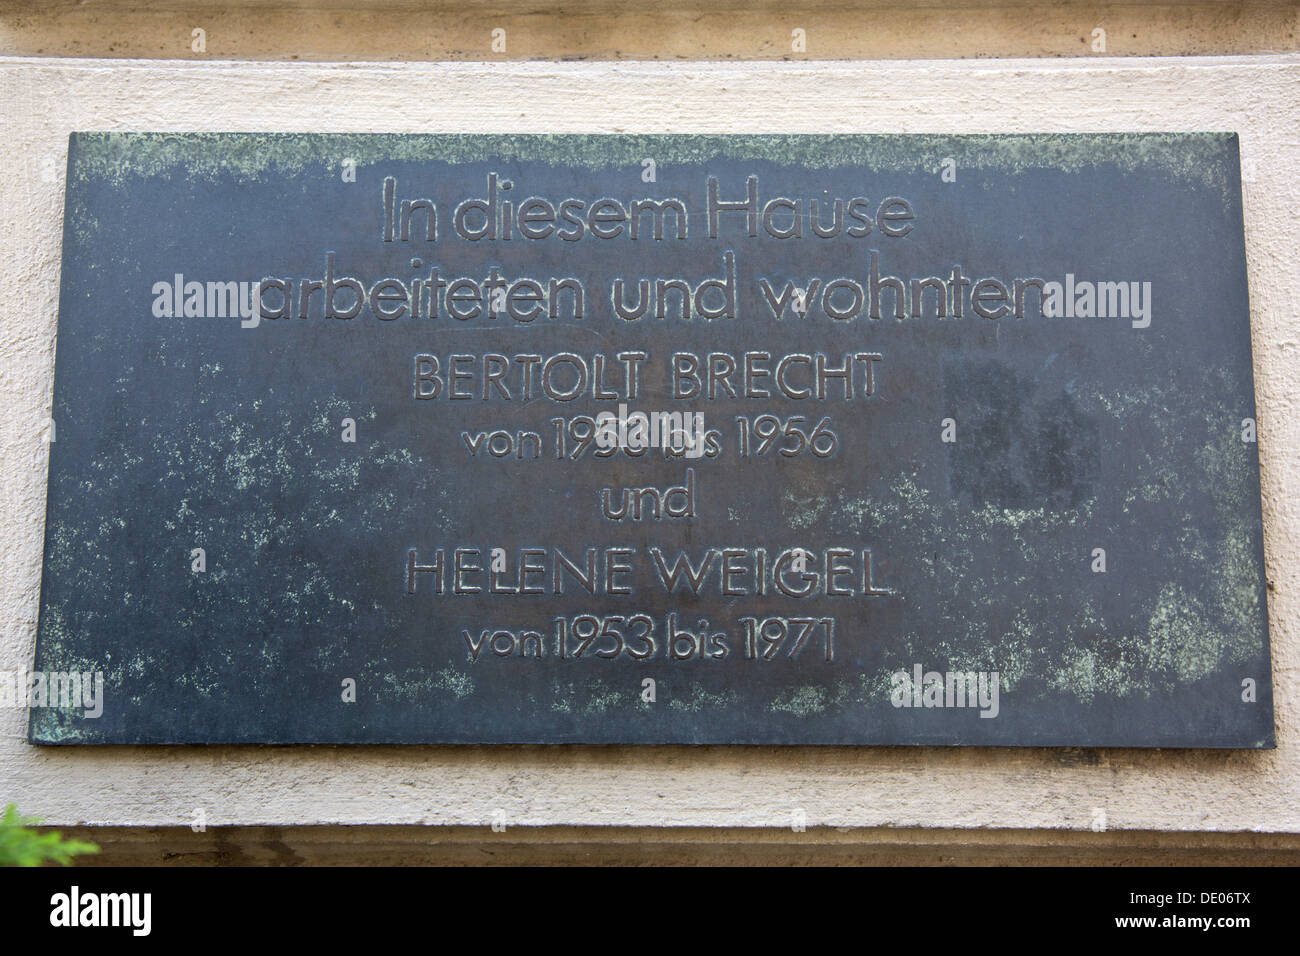 Commemorative plaque for Bertolt Brecht and Helene Weigel, Berlin Stock Photo